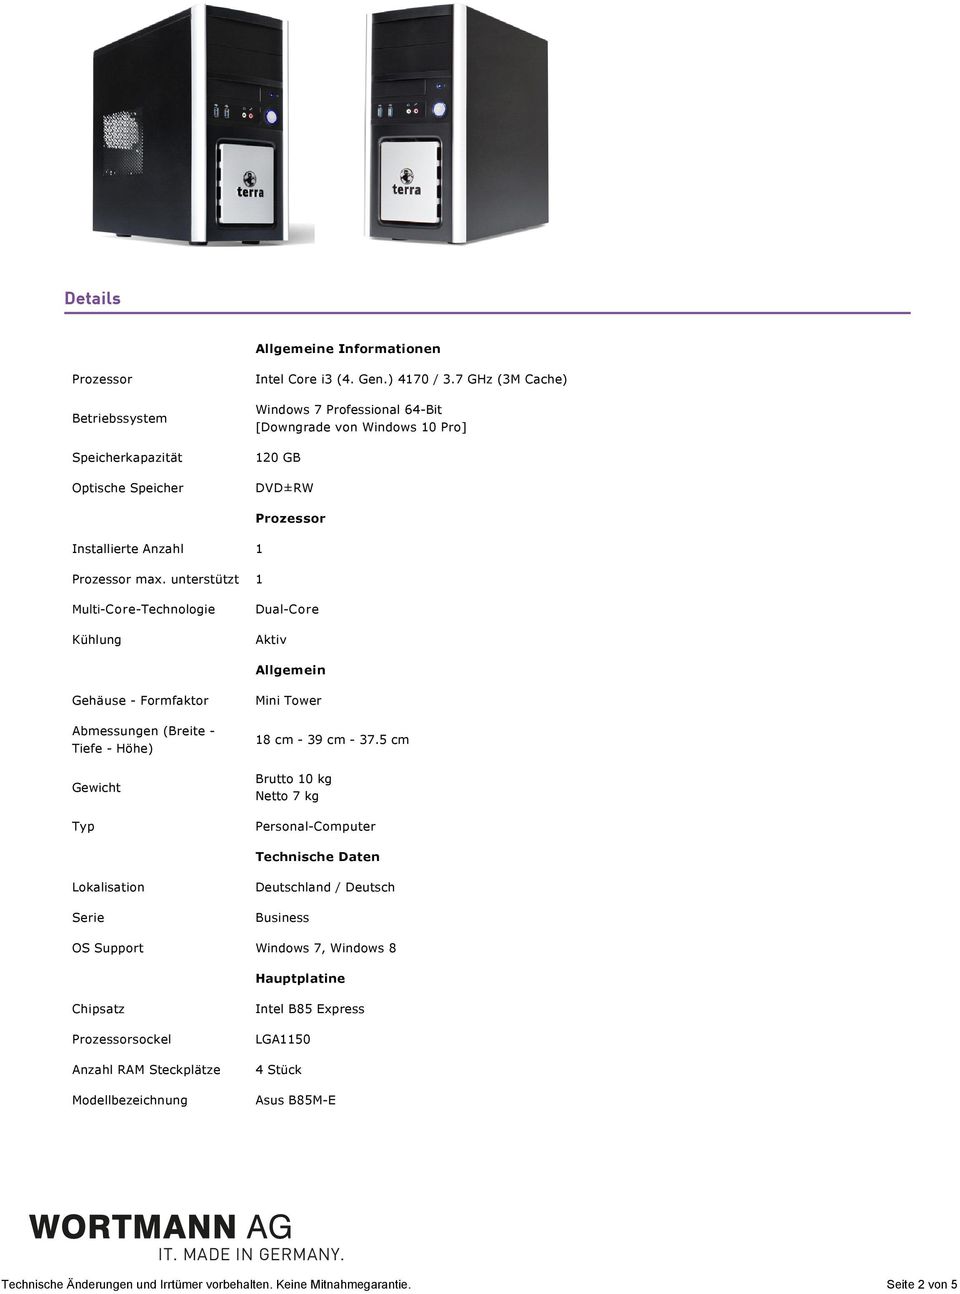 Prozessormax.unterstützt 1 Multi Core Technologie Dual Core Kühlung Aktiv Allgemein Gehäuse Formfaktor MiniTower Abmessungen(Breite Tiefe Höhe) 18cm 39cm 37.